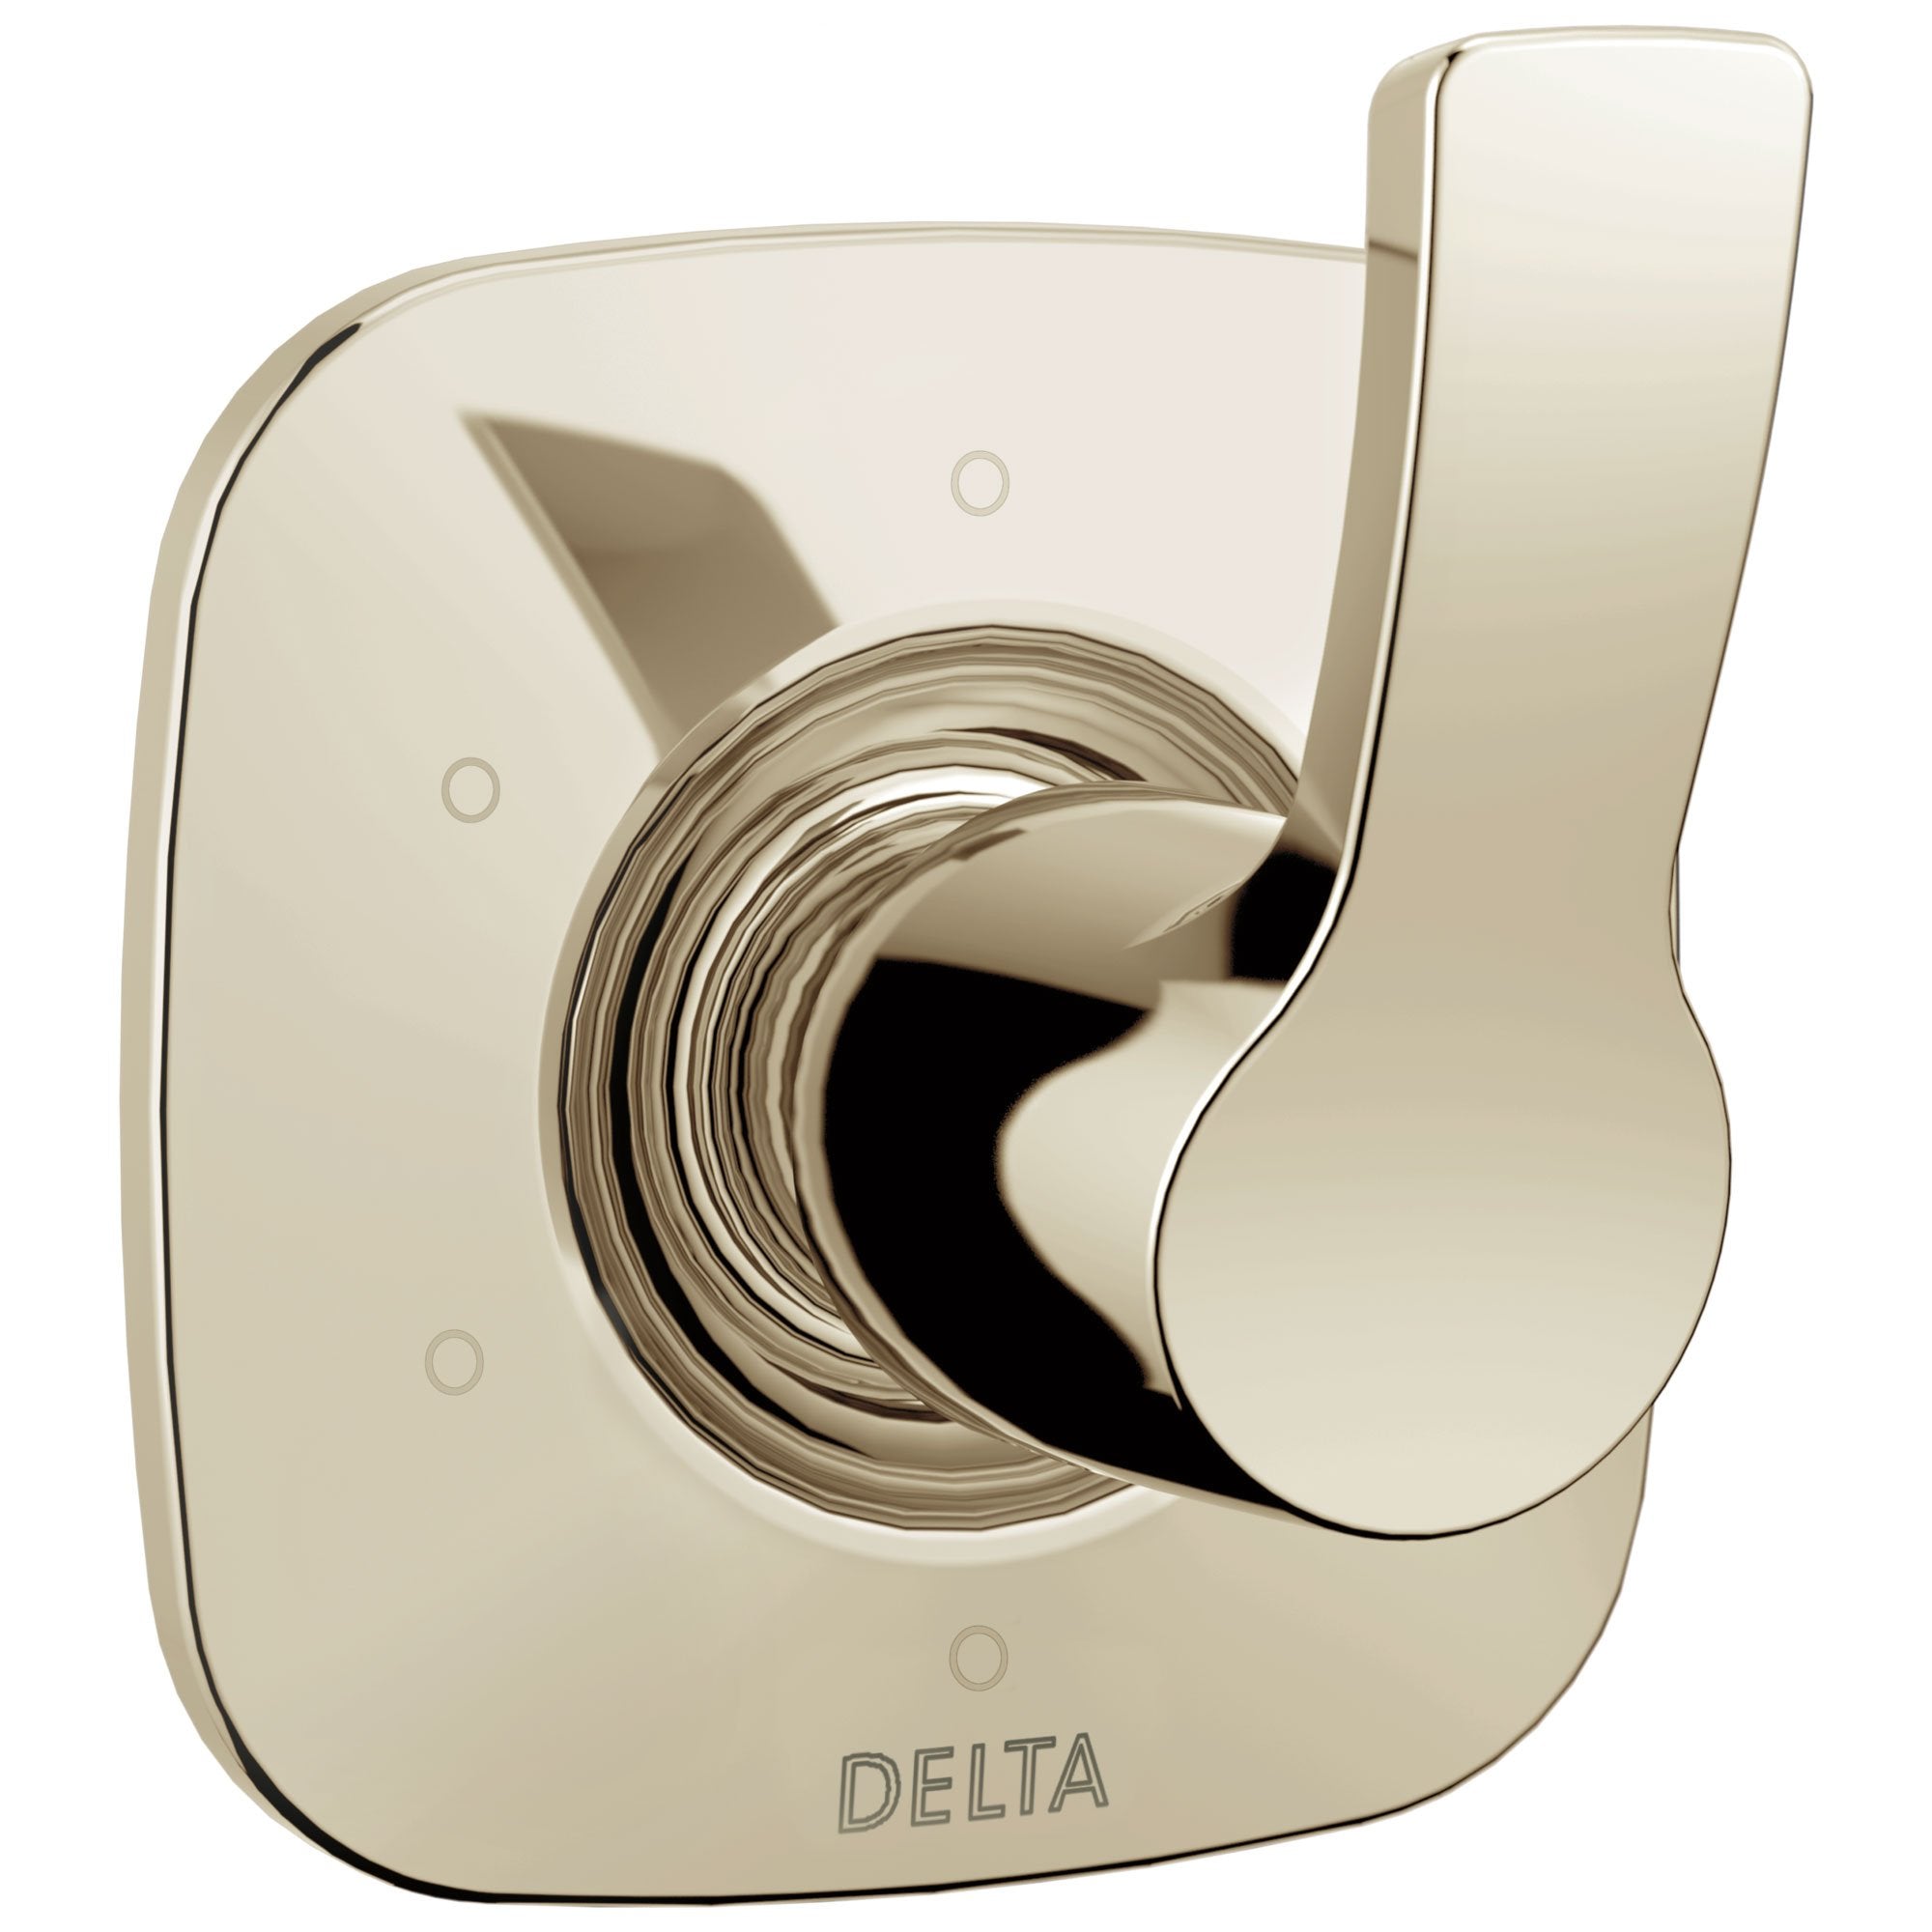 Delta Tesla Collection Polished Nickel Finish 6-Setting 3-Port Modern Single Handle Shower Diverter Includes Rough-in Valve D2054V